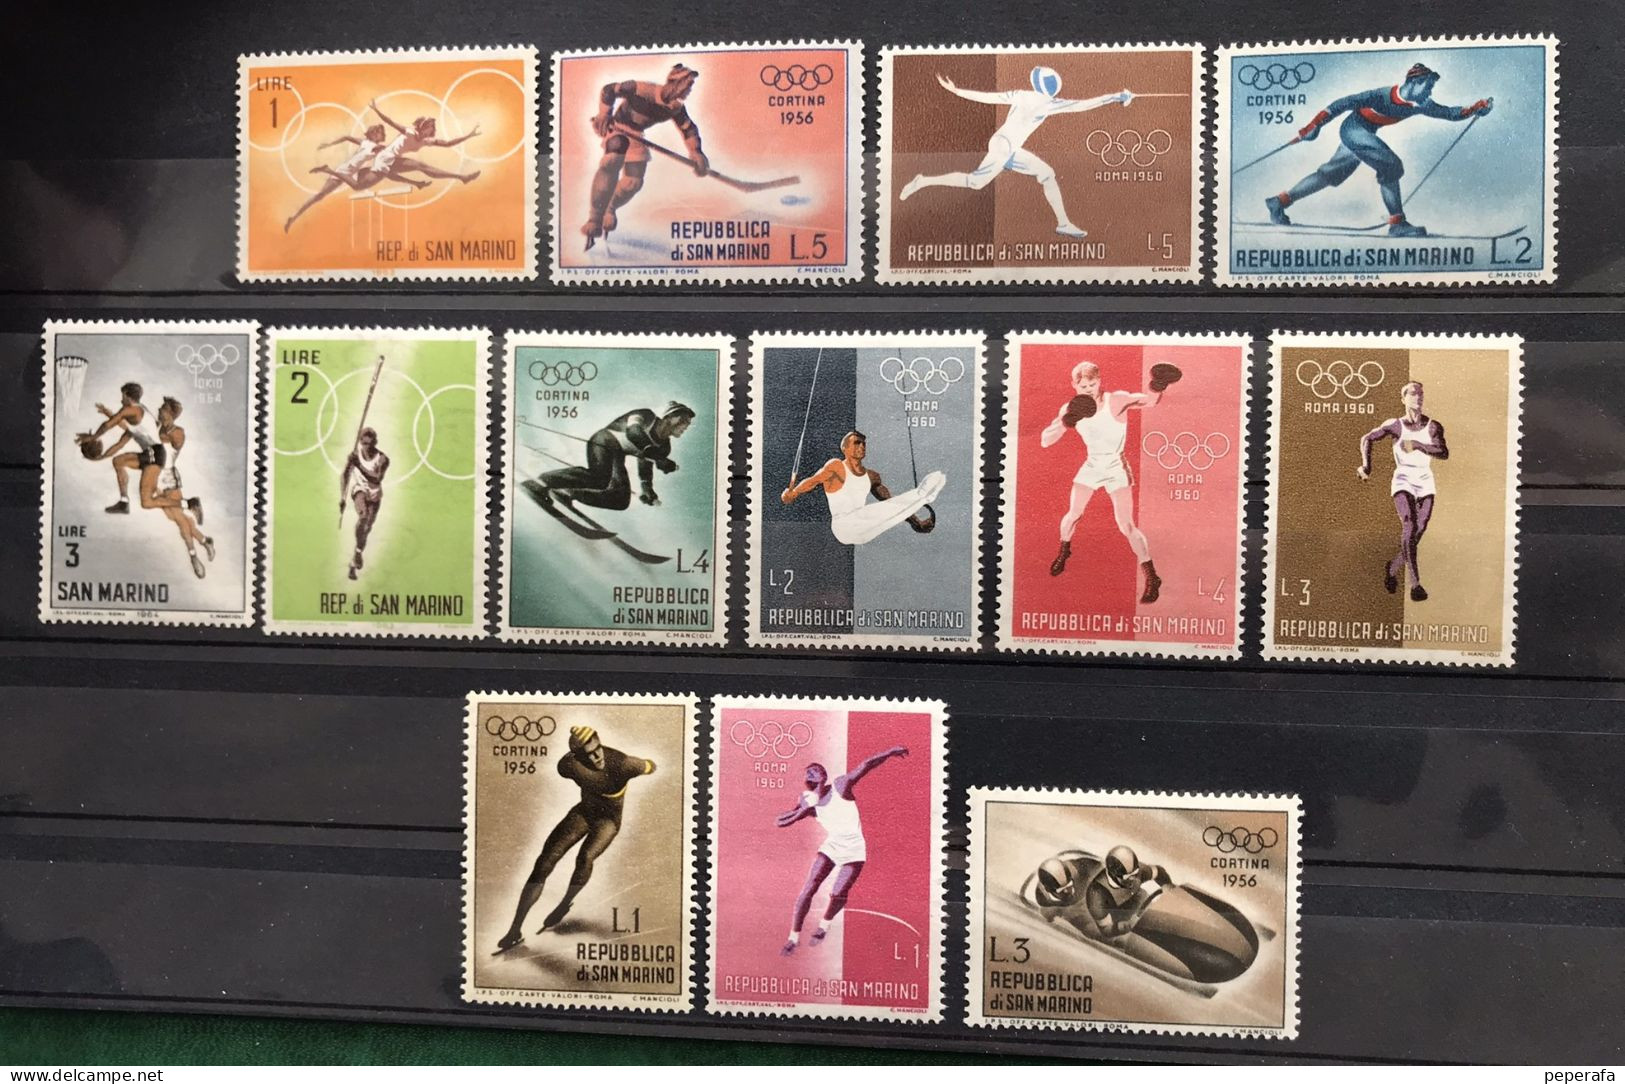 REPUBLIQUE DI SAN MARINO 1956 Giochi Olimpici Cortina - Unused Stamps